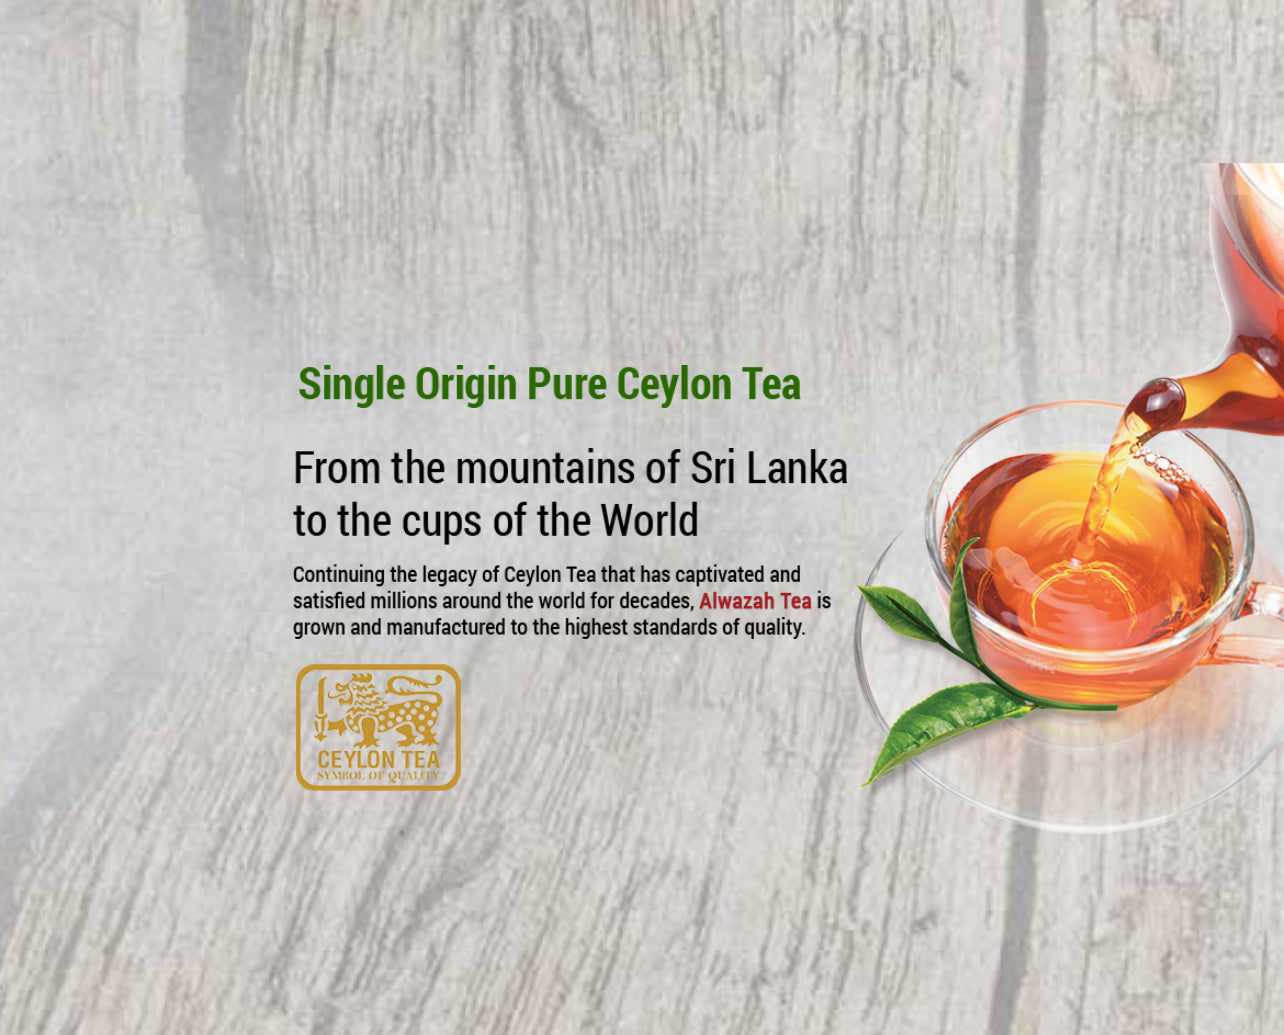 Alwazah Tea Pure Ceylon Black Tea 250 Tea Bags x 2 grms